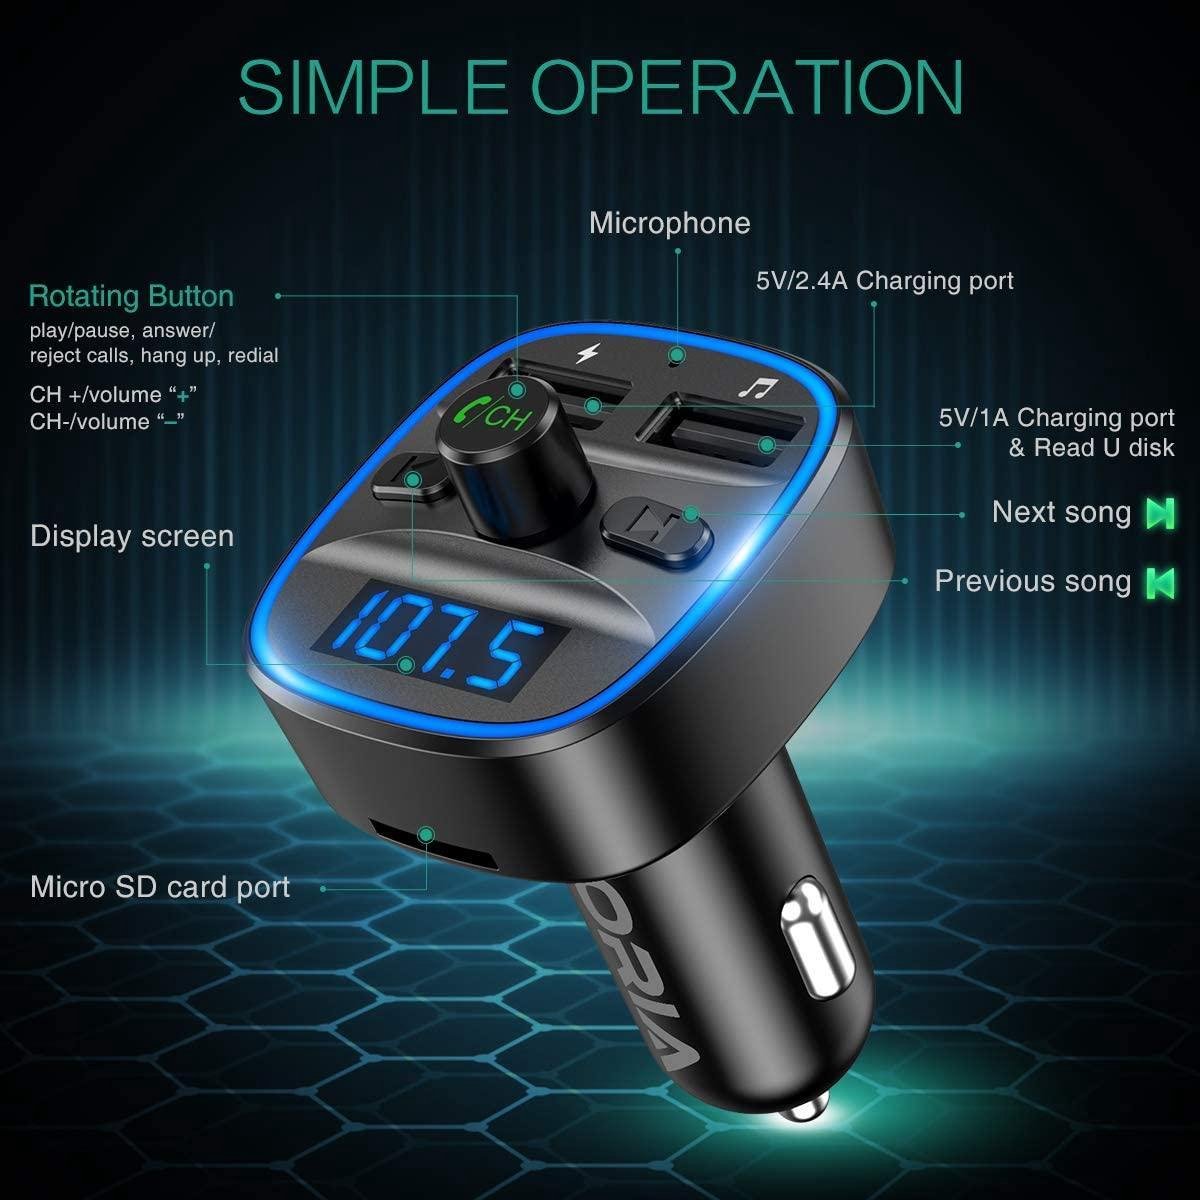 Autoradio Bluetooth USB Lifelf Radio Voiture Récepteur avec Lecteur MP3 WMA  F